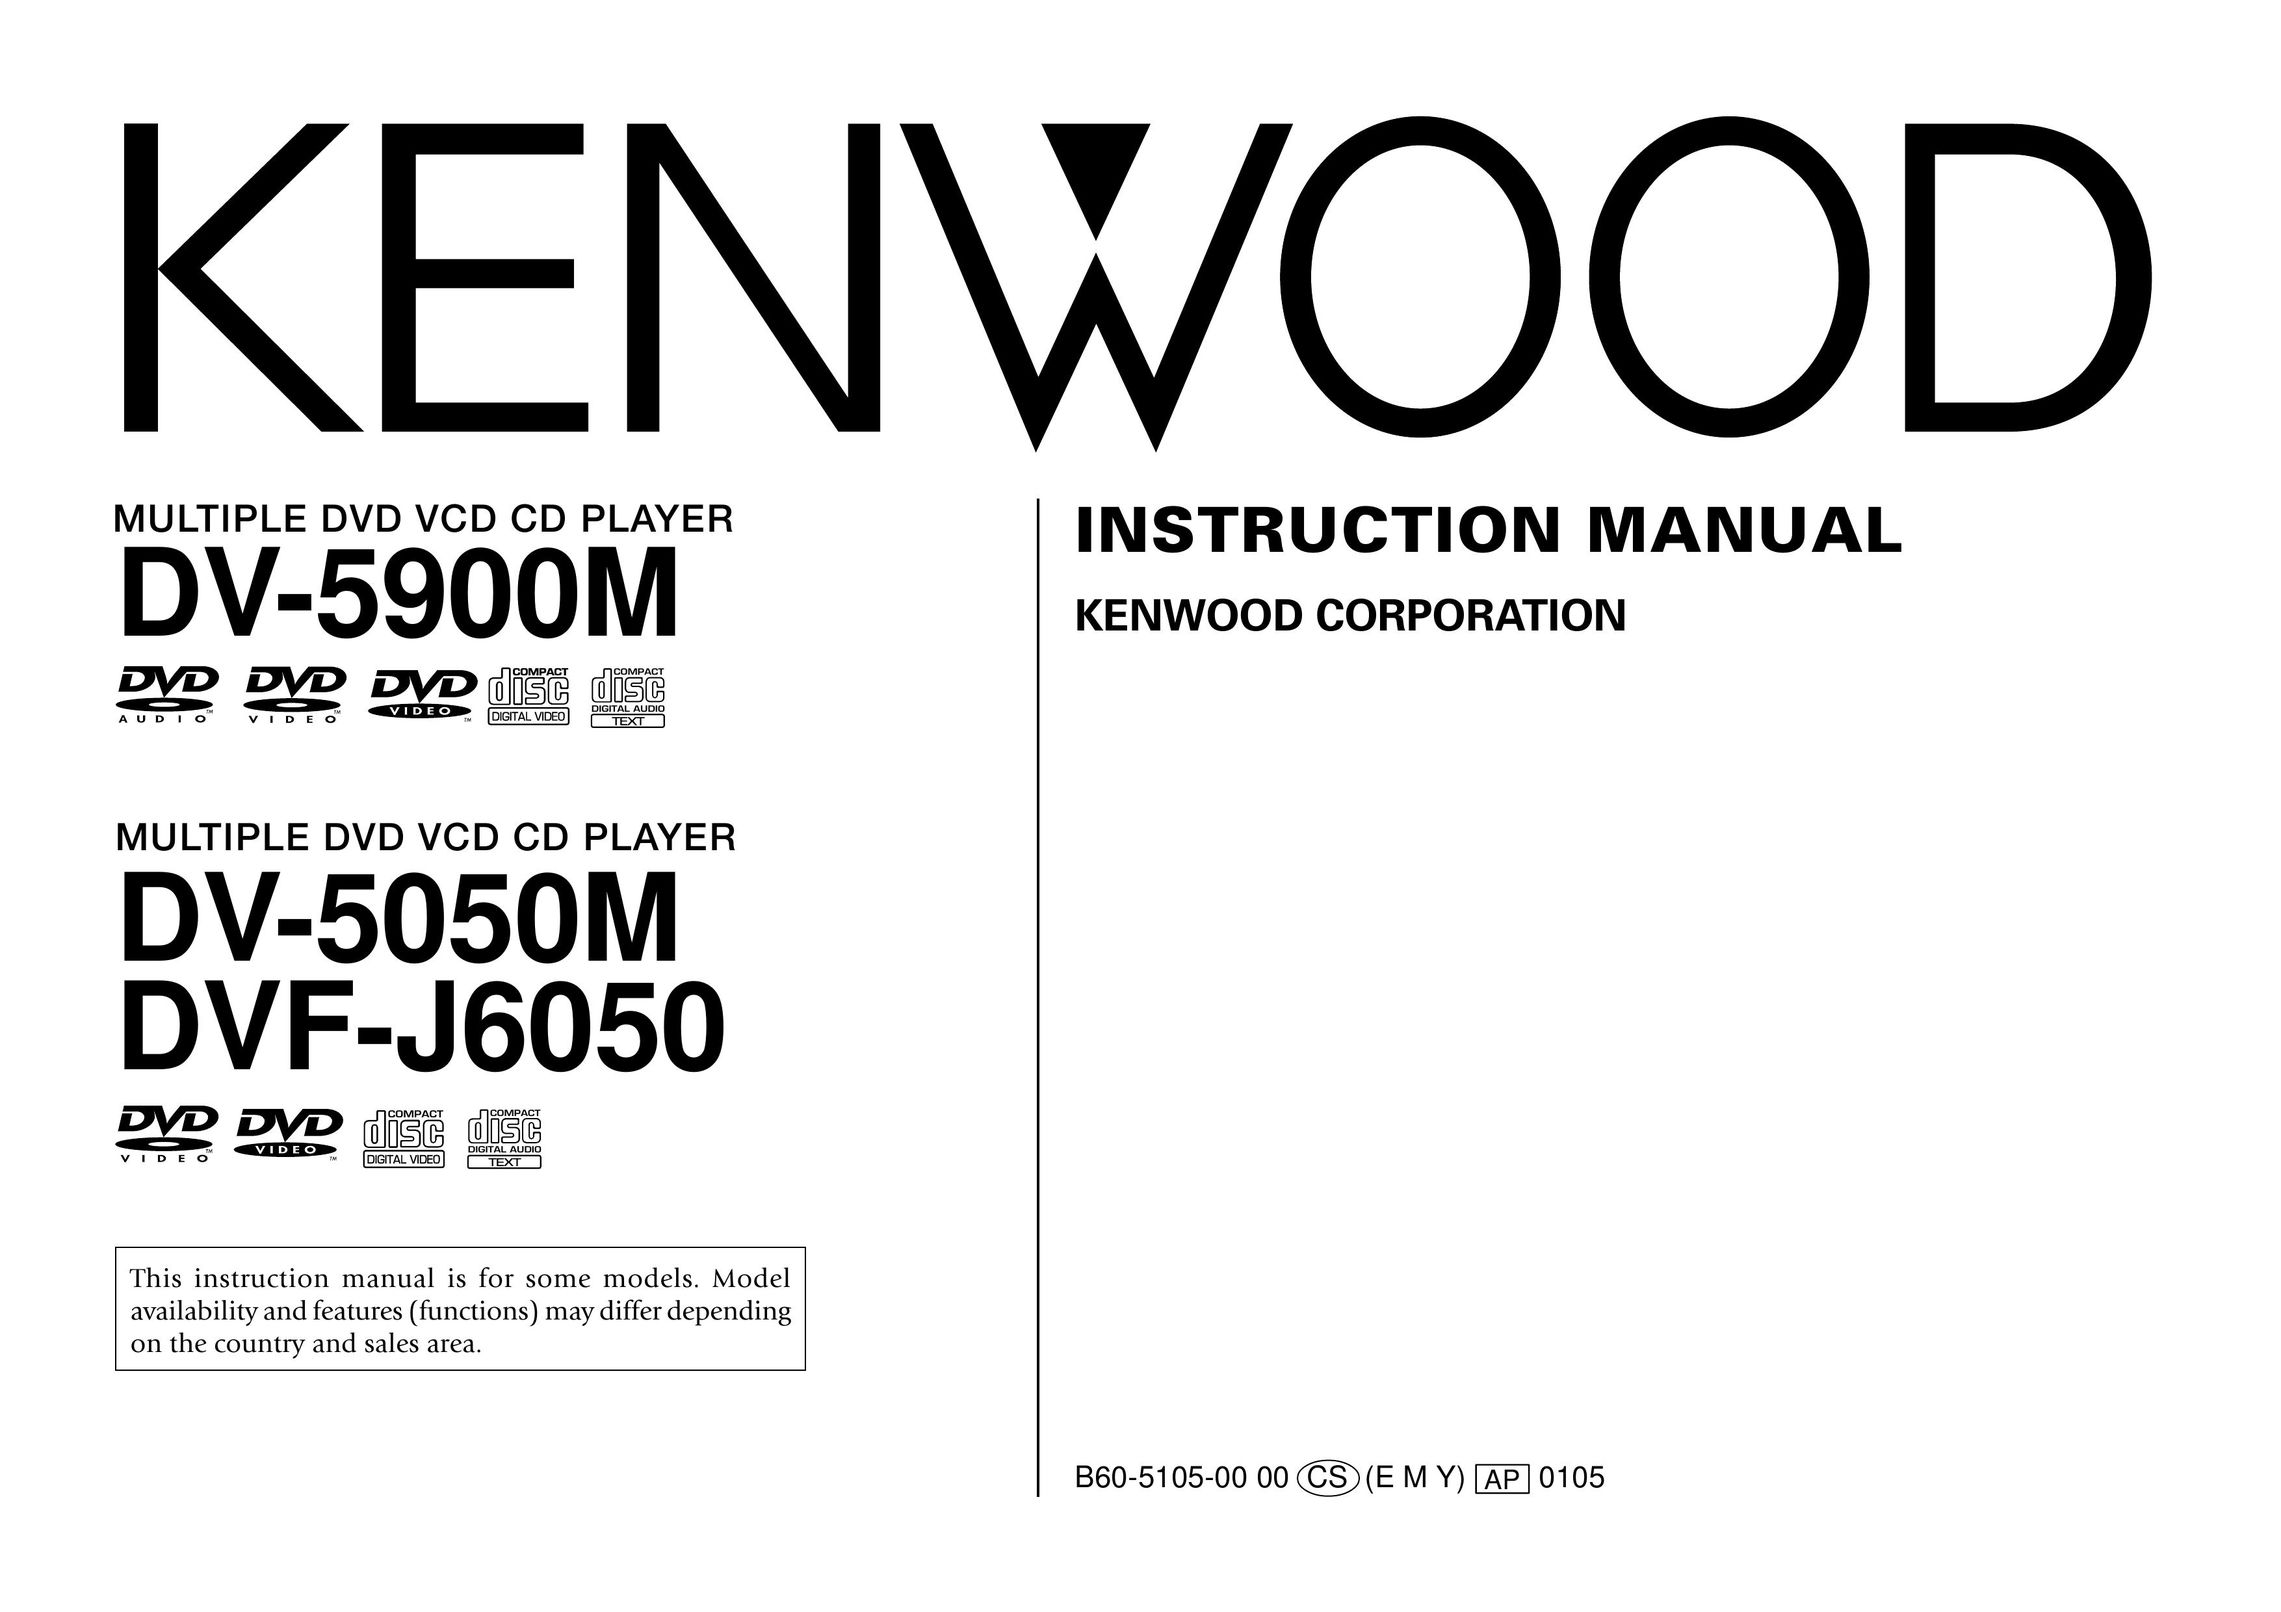 Kenwood DV-5900M DVD Player User Manual